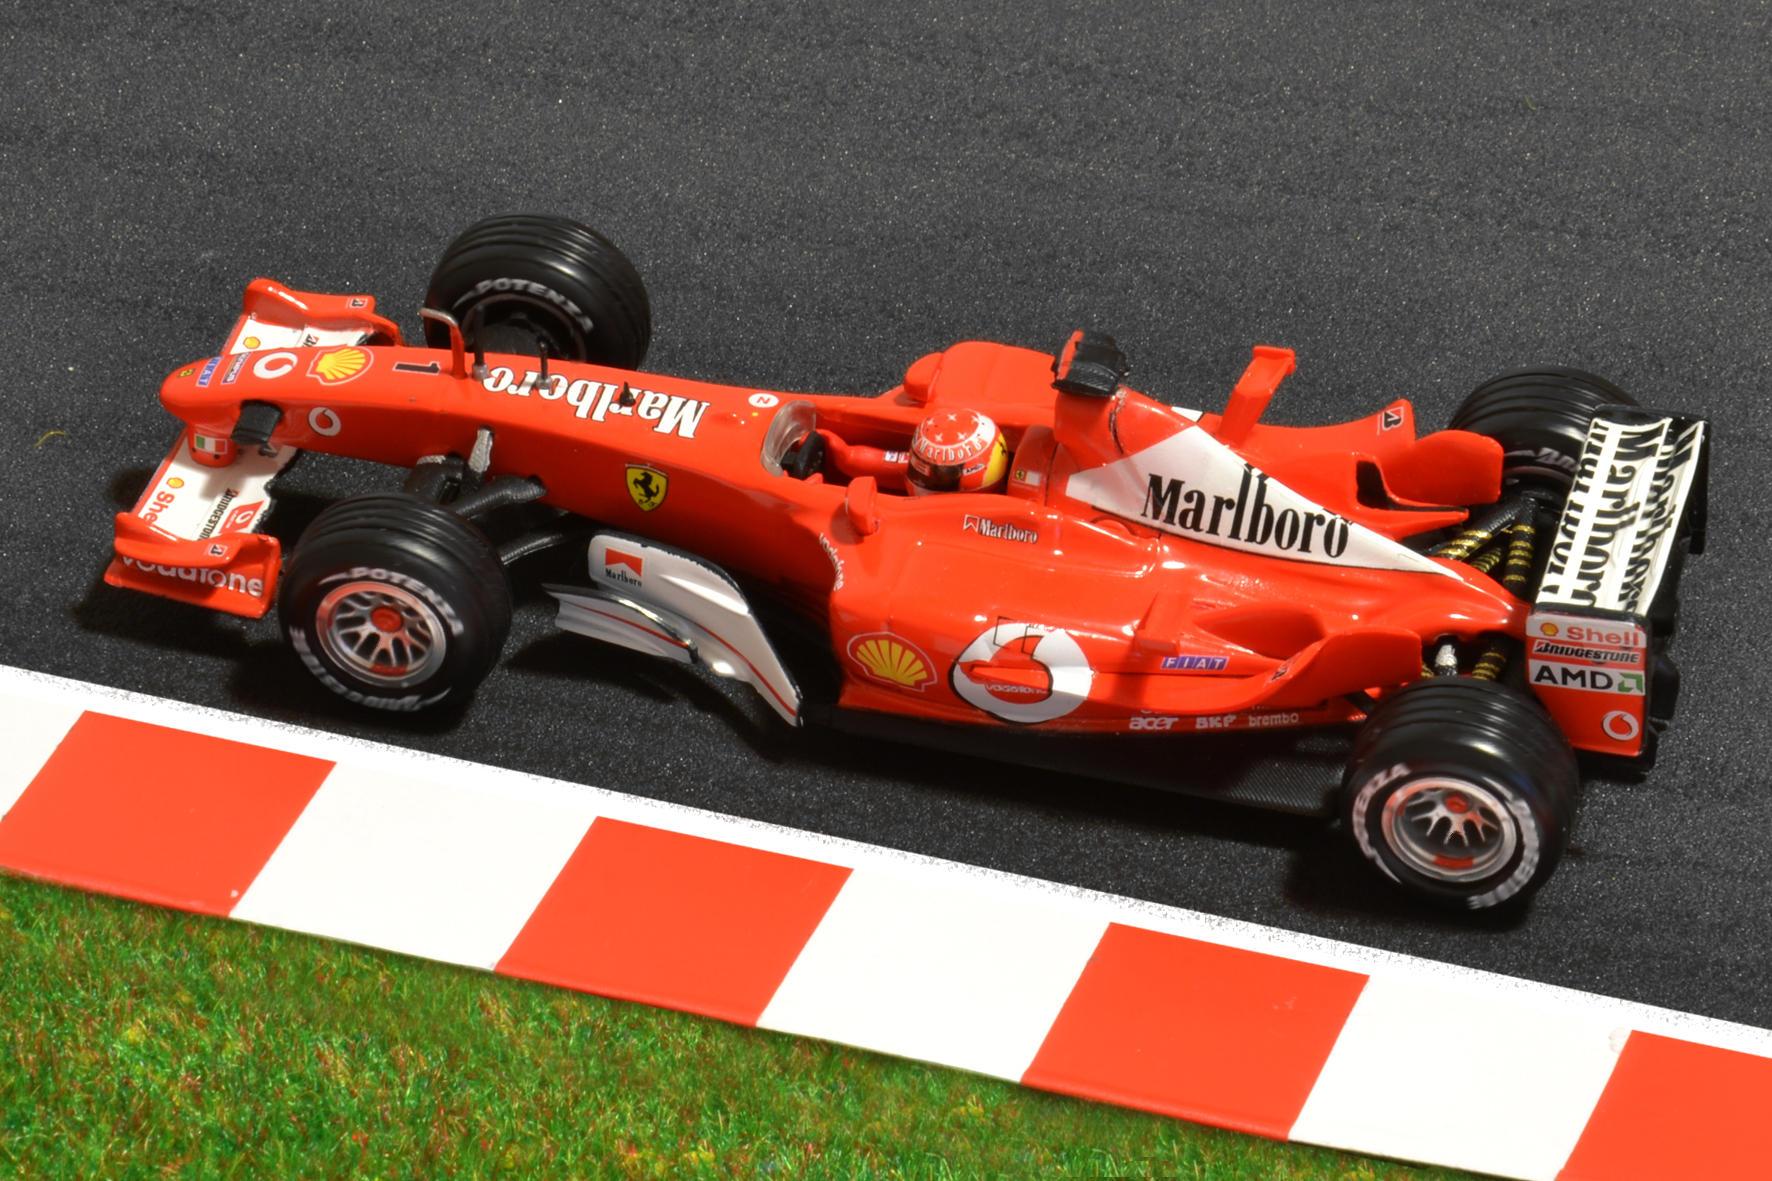 Ferrari F2003-GA Michael Schumacher 2003 - Hot Wheels 1:43